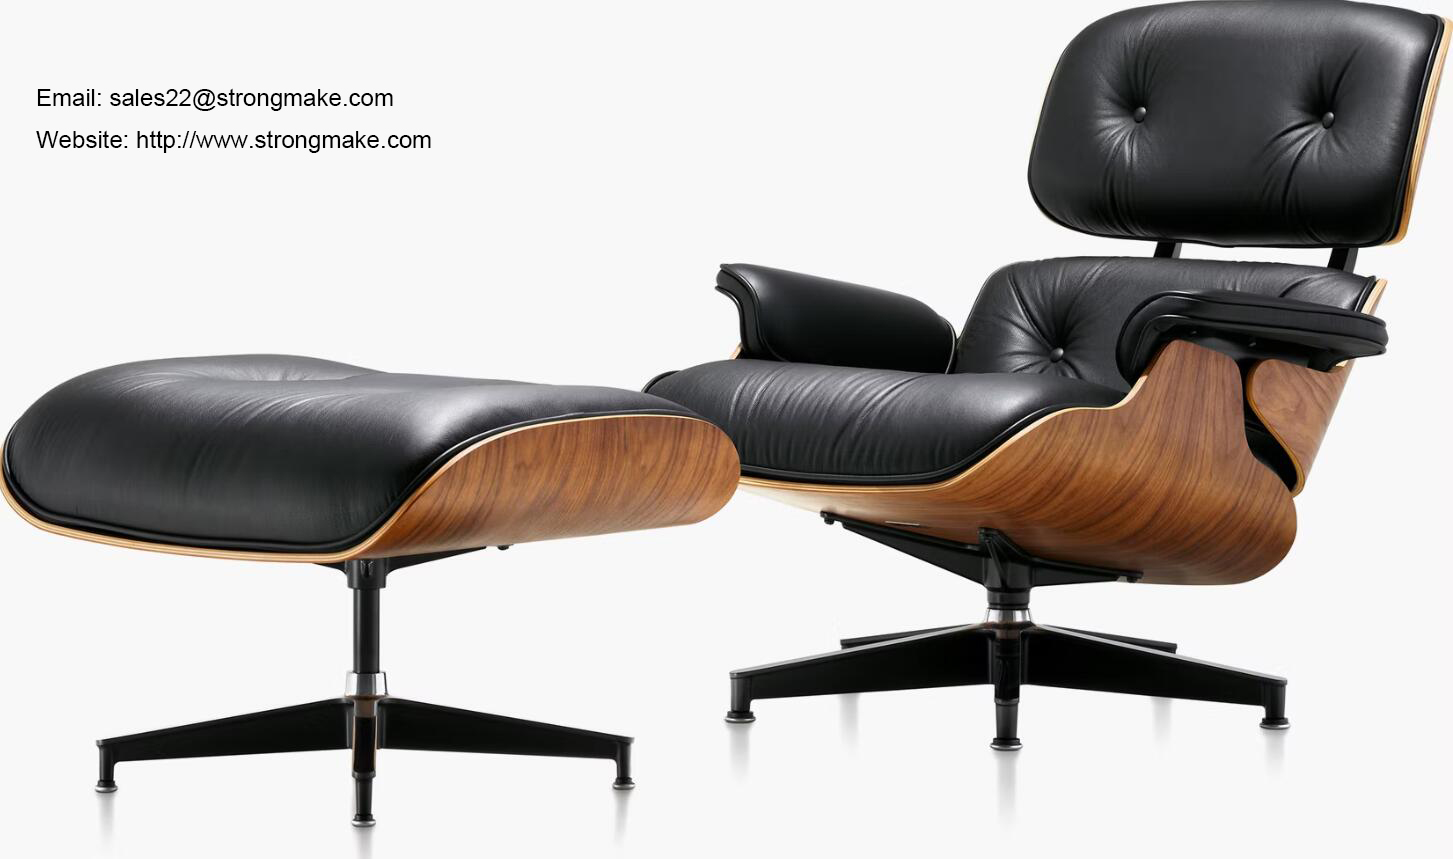 Реплика кресла для отдыха STRONGMAKE 8026 Eames